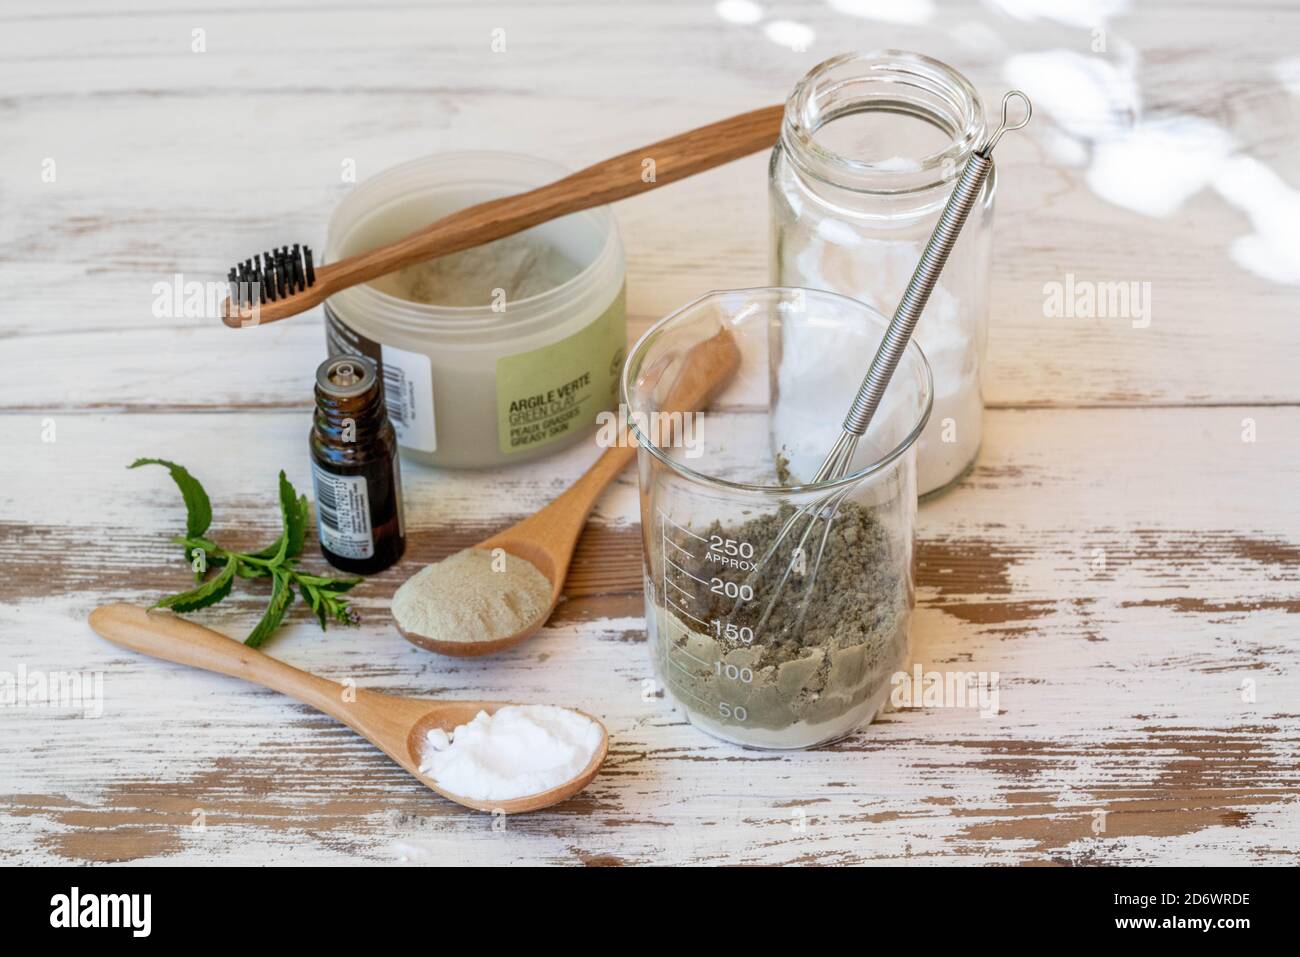 Préparation de dentifrice maison avec du bicarbonate de l'argile verte et de l'huile essentielle. Stockfoto